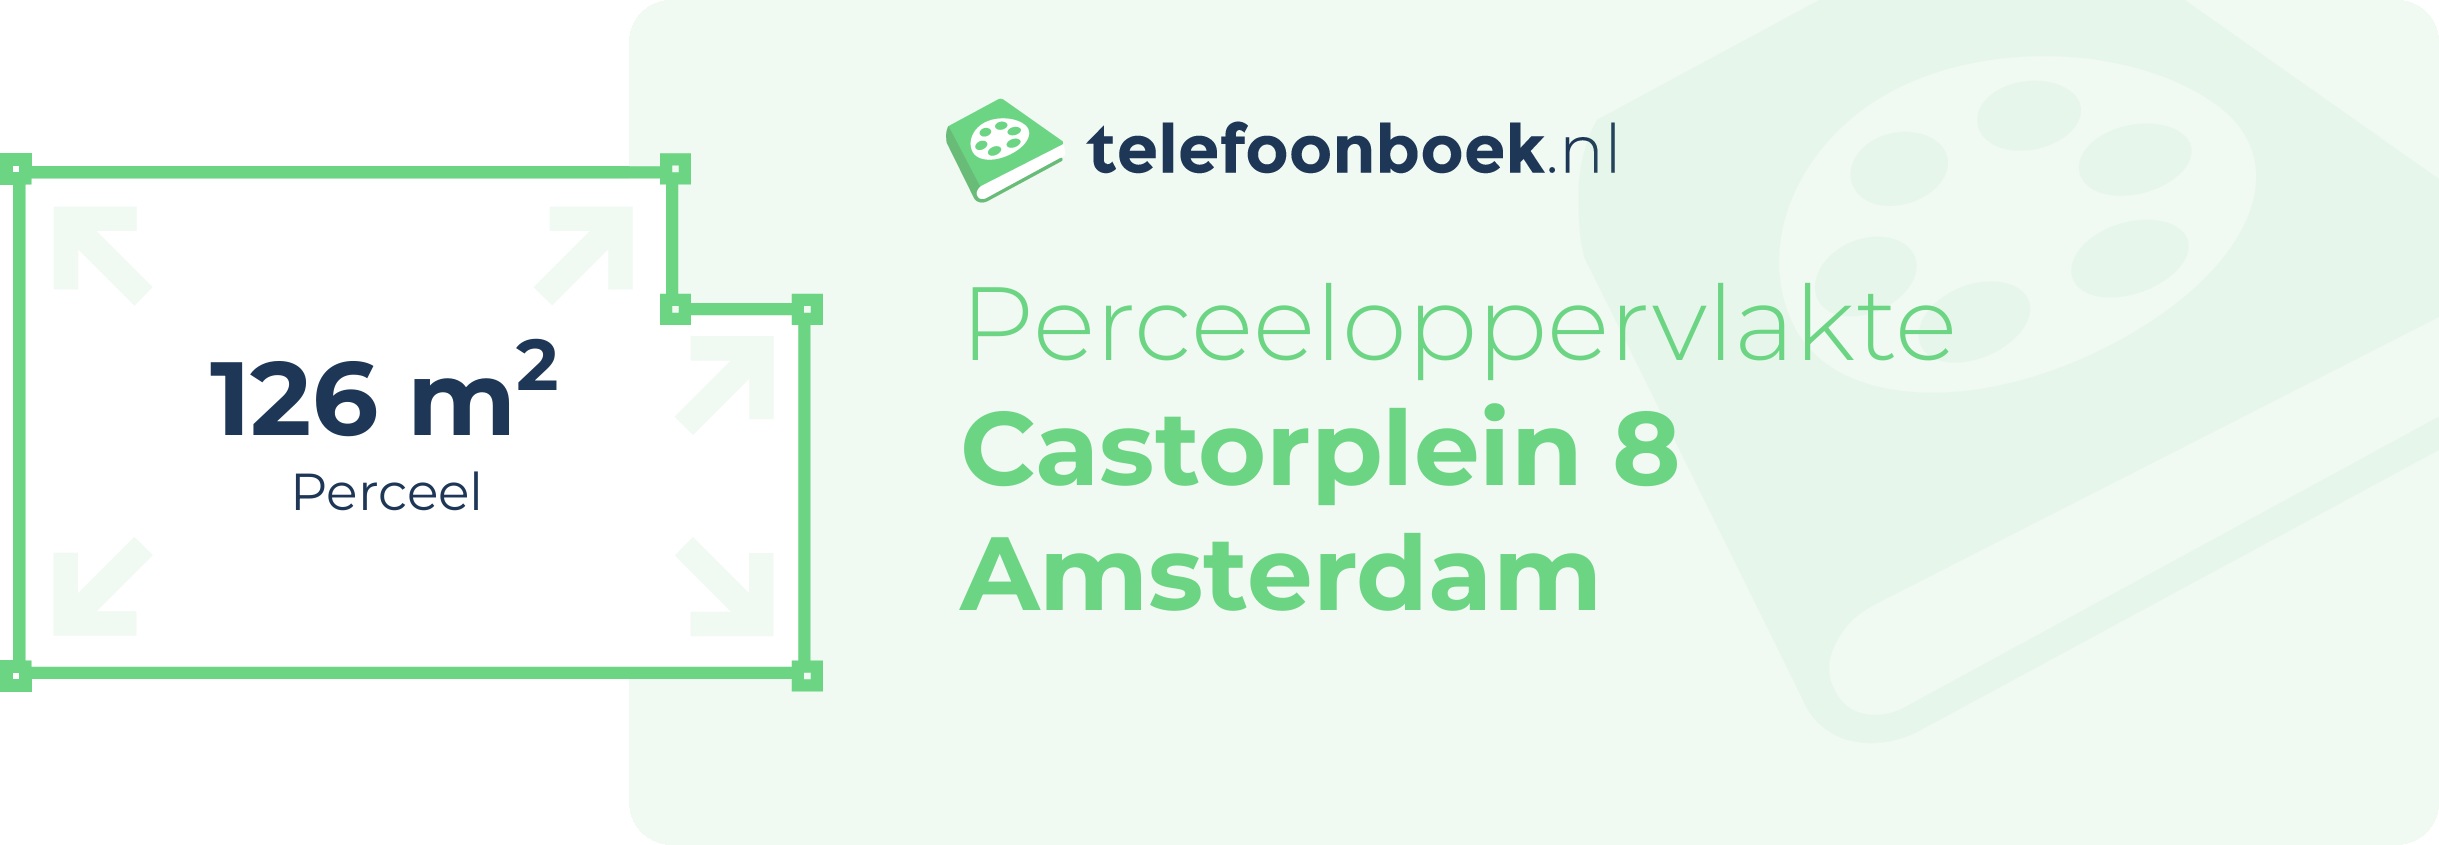 Perceeloppervlakte Castorplein 8 Amsterdam